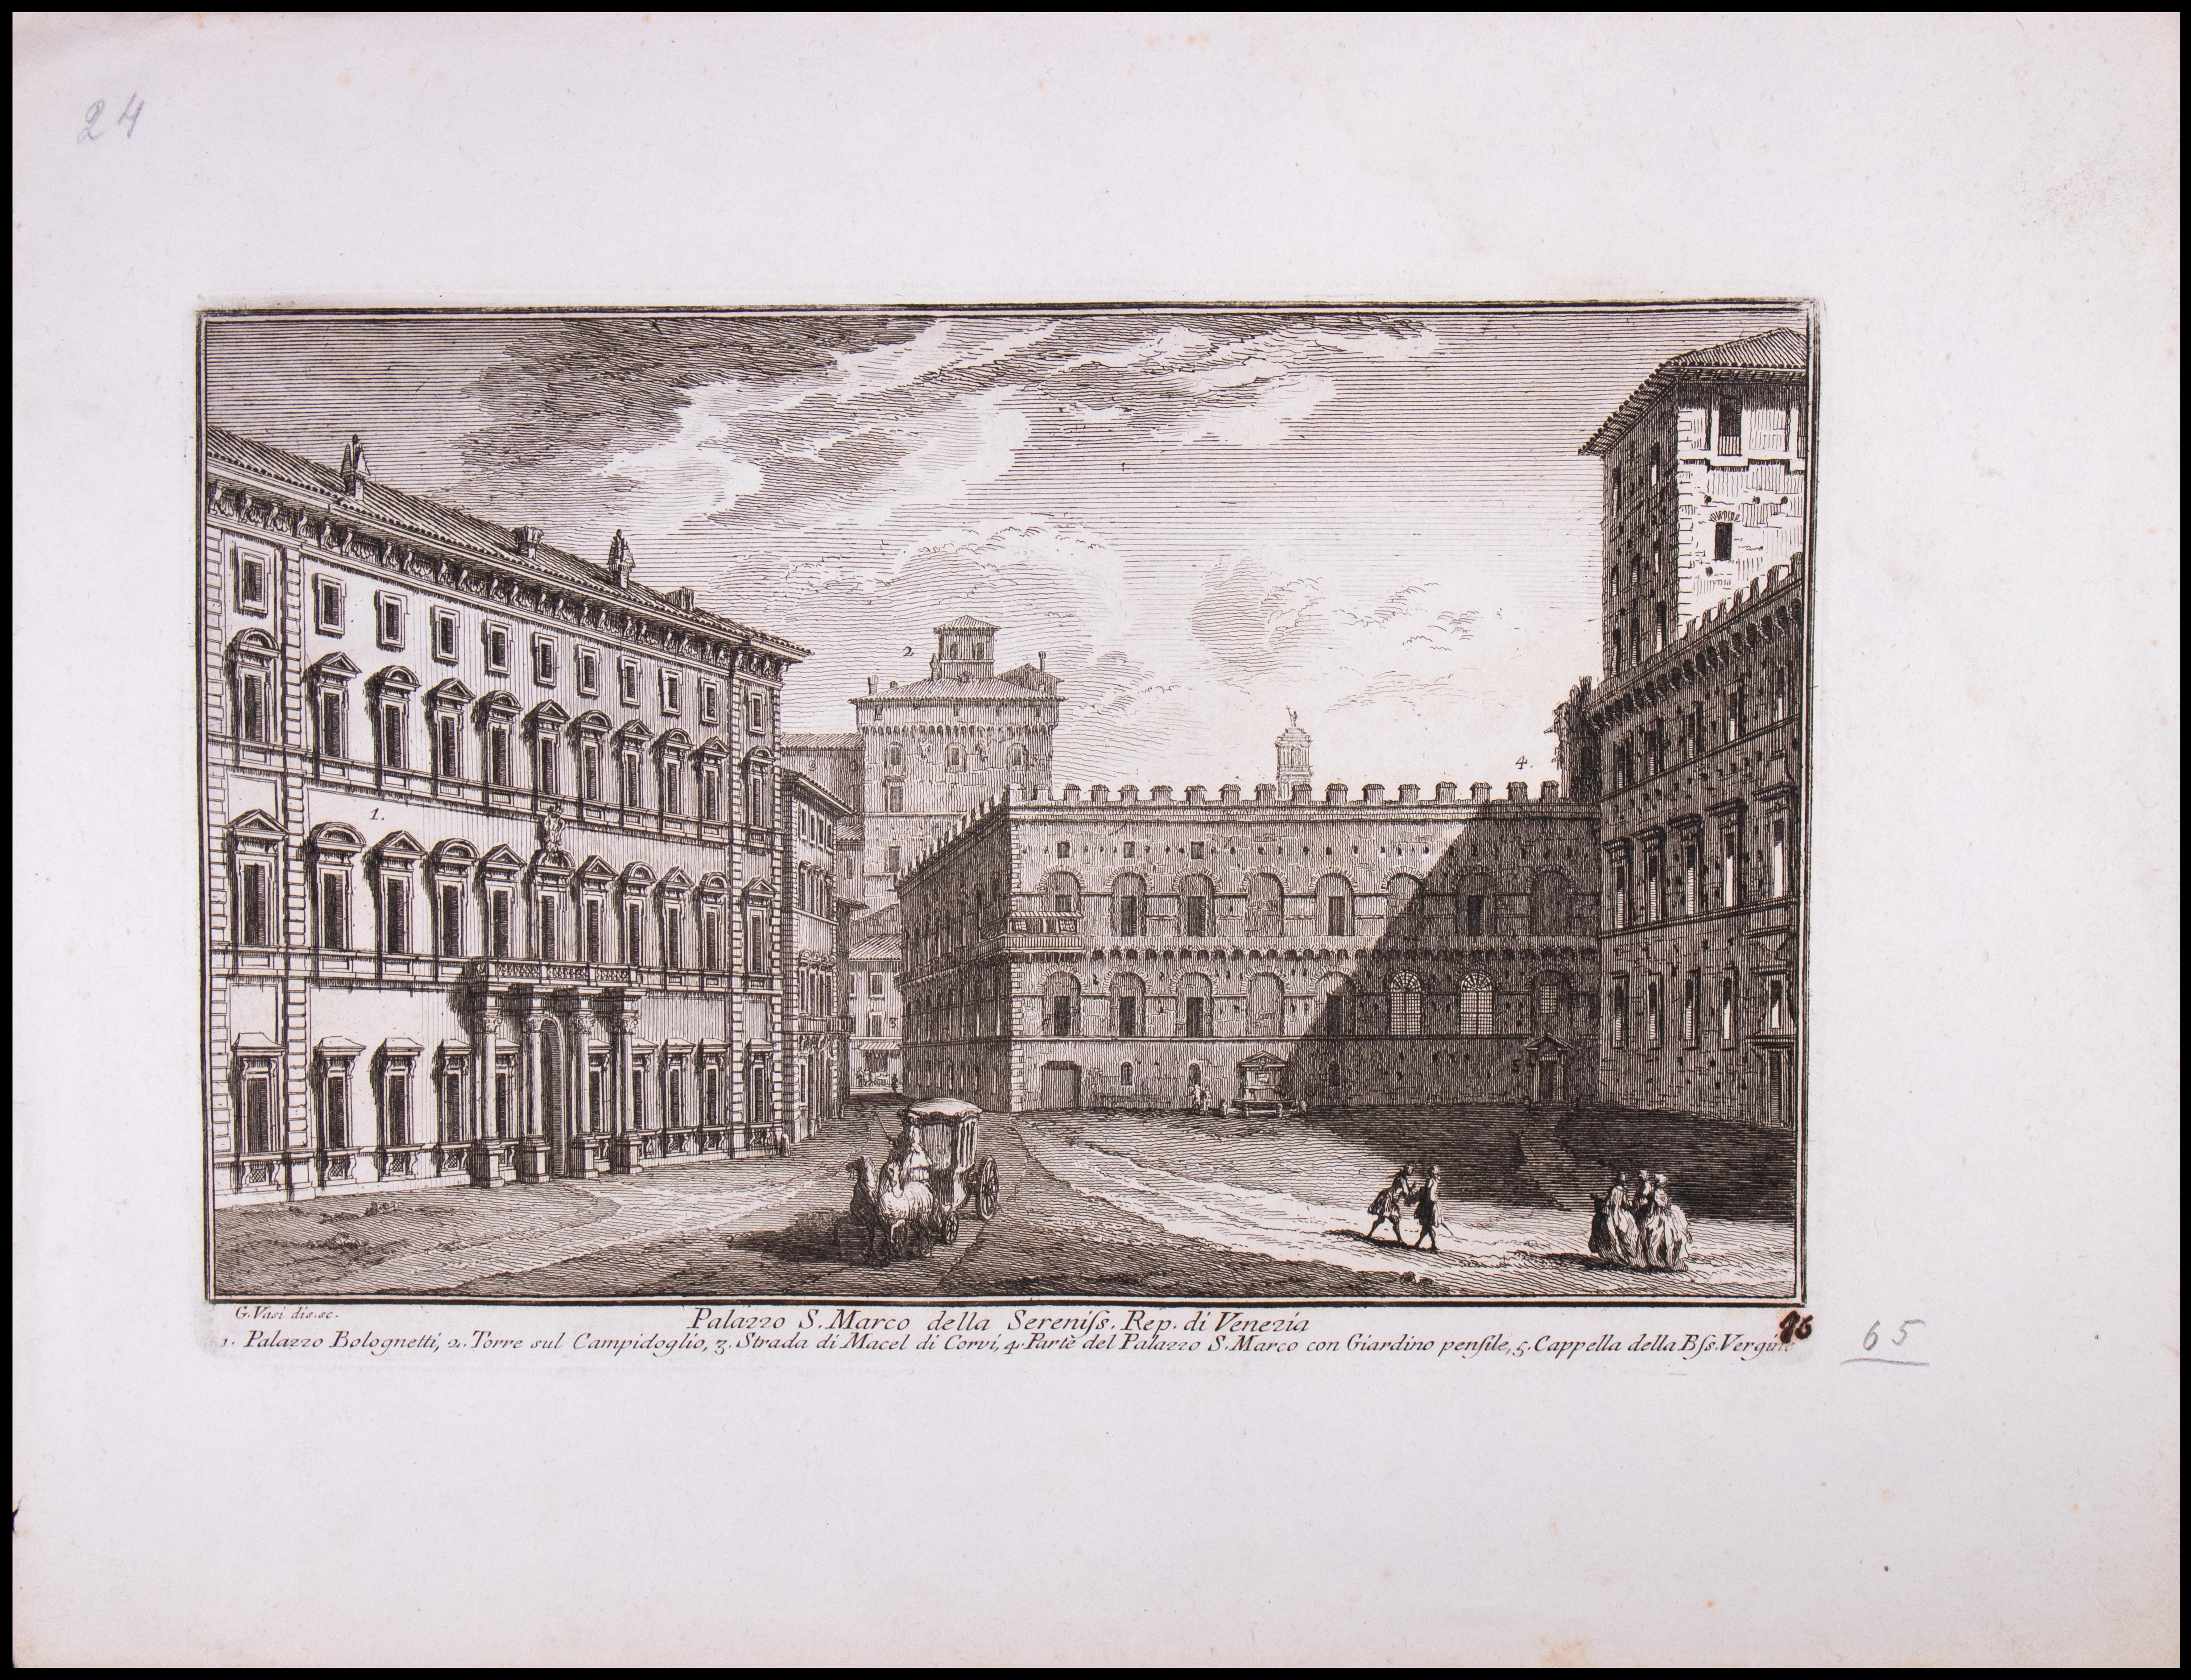 Palazzo S.Marco della Sereniss. Rep. di Venezia ist eine Radierung aus dem späten 18. Jahrhundert von Giuseppe Vasi.

Signiert und betitelt am unteren Rand der Platte. 

Guter Zustand mit Ausnahme der verbrauchten Ränder mit einigen